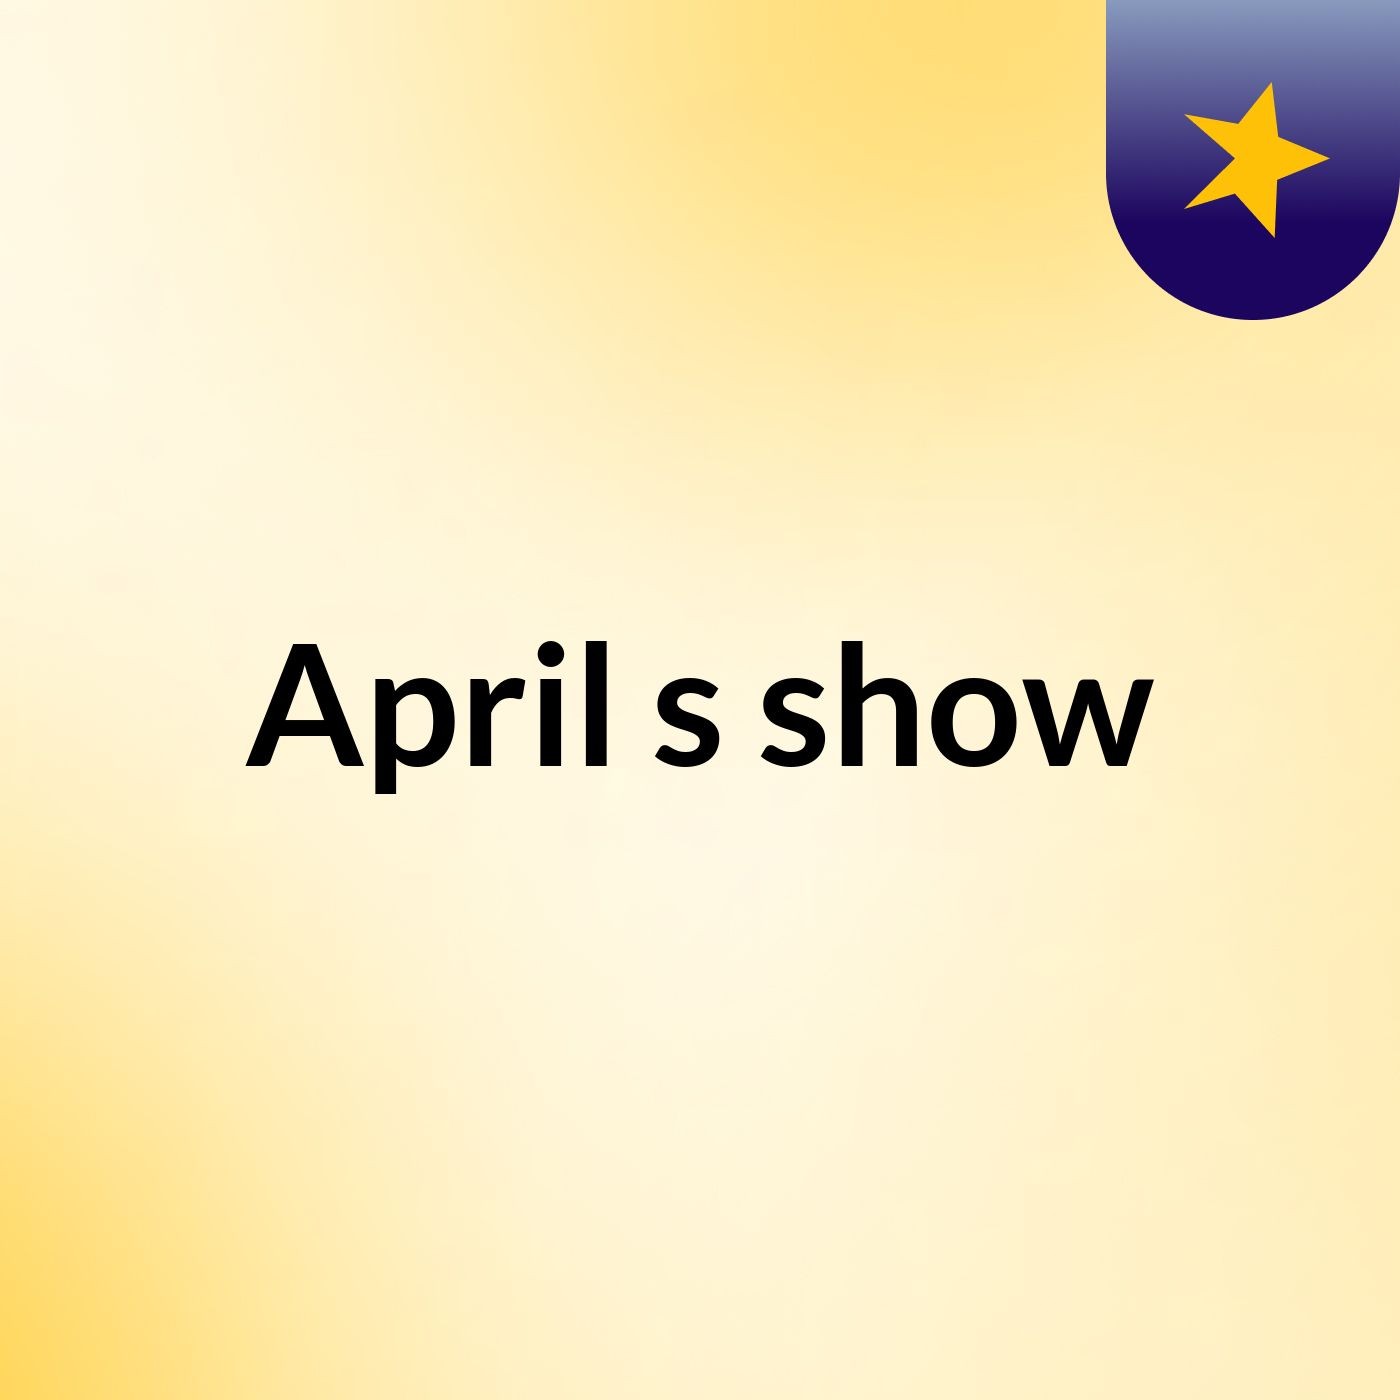 Episode 2 - April's show